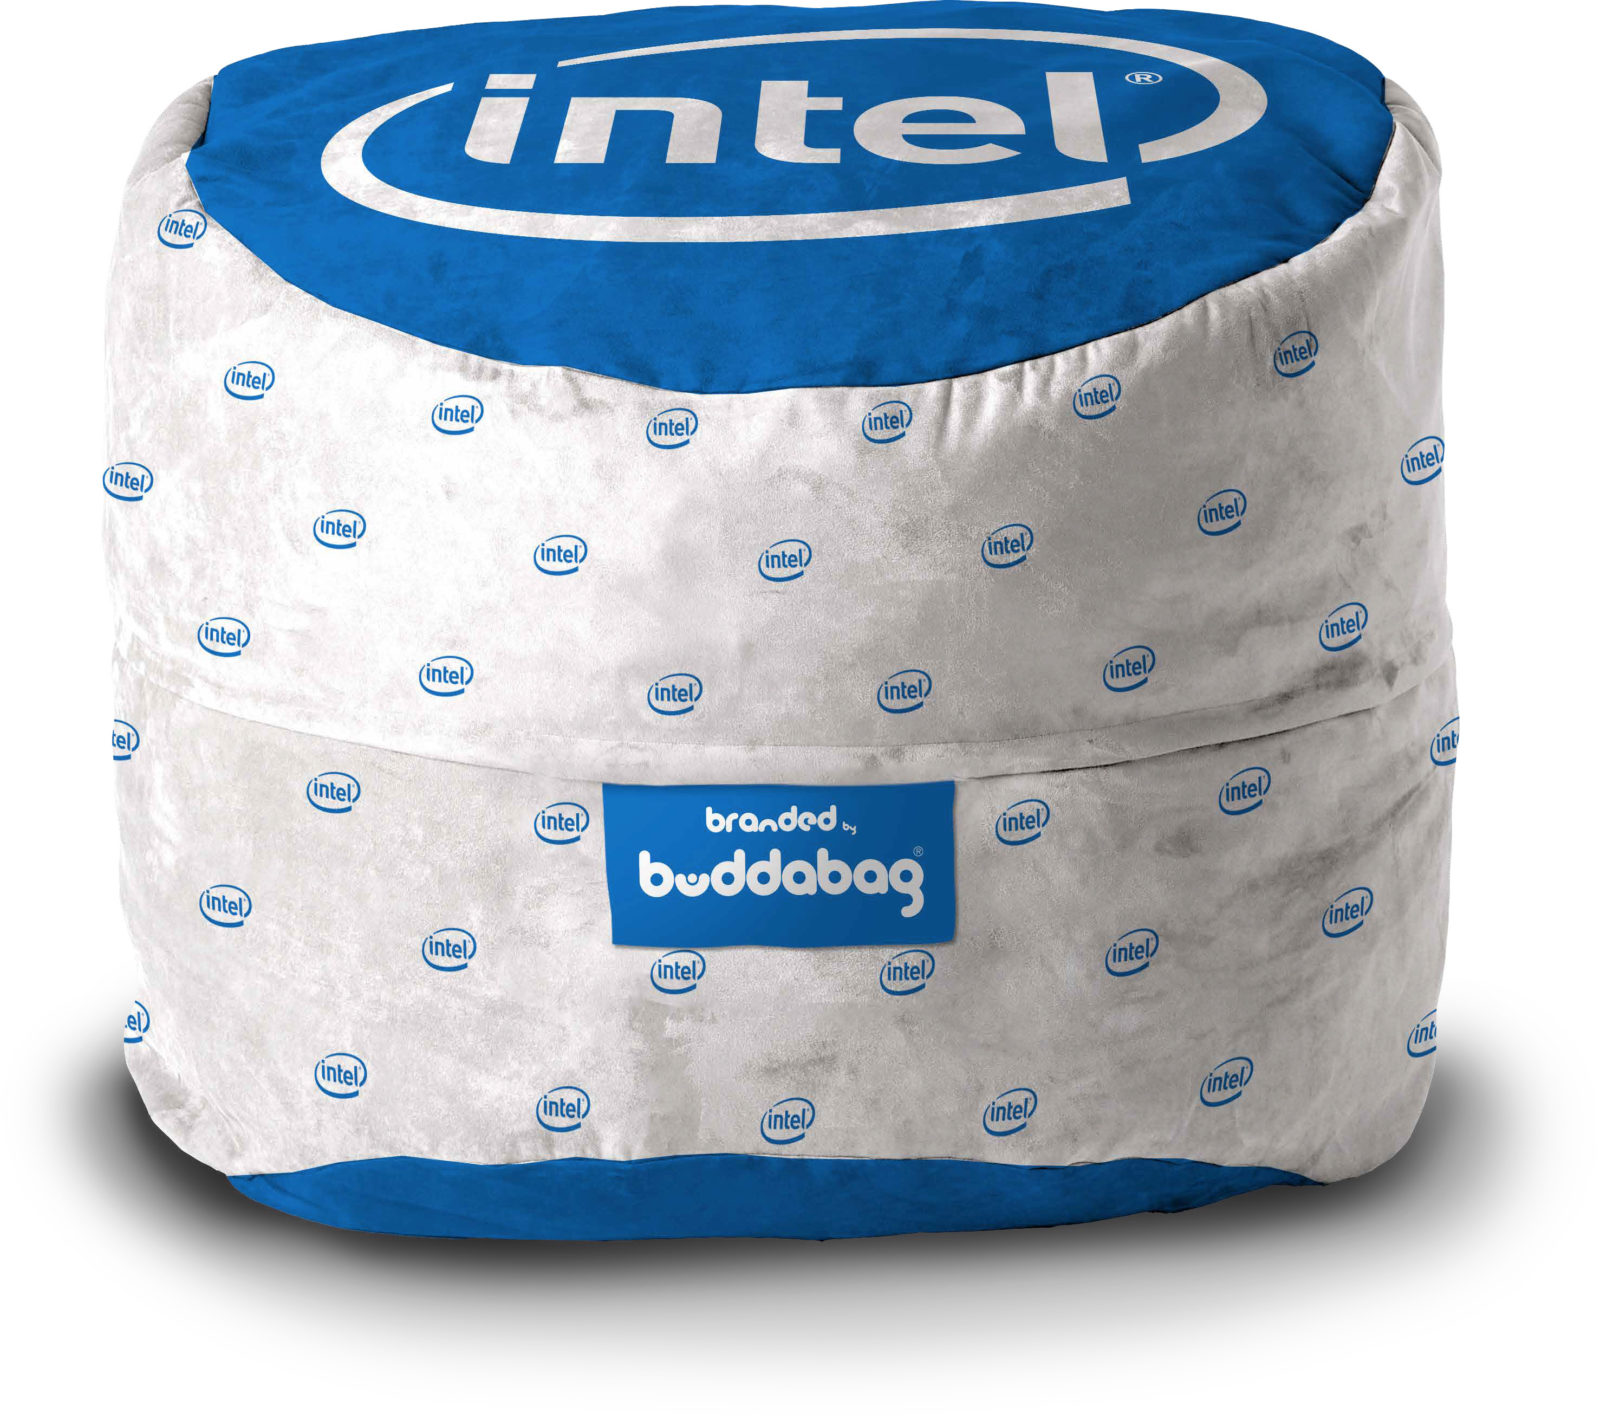 Intel Branded buddabag